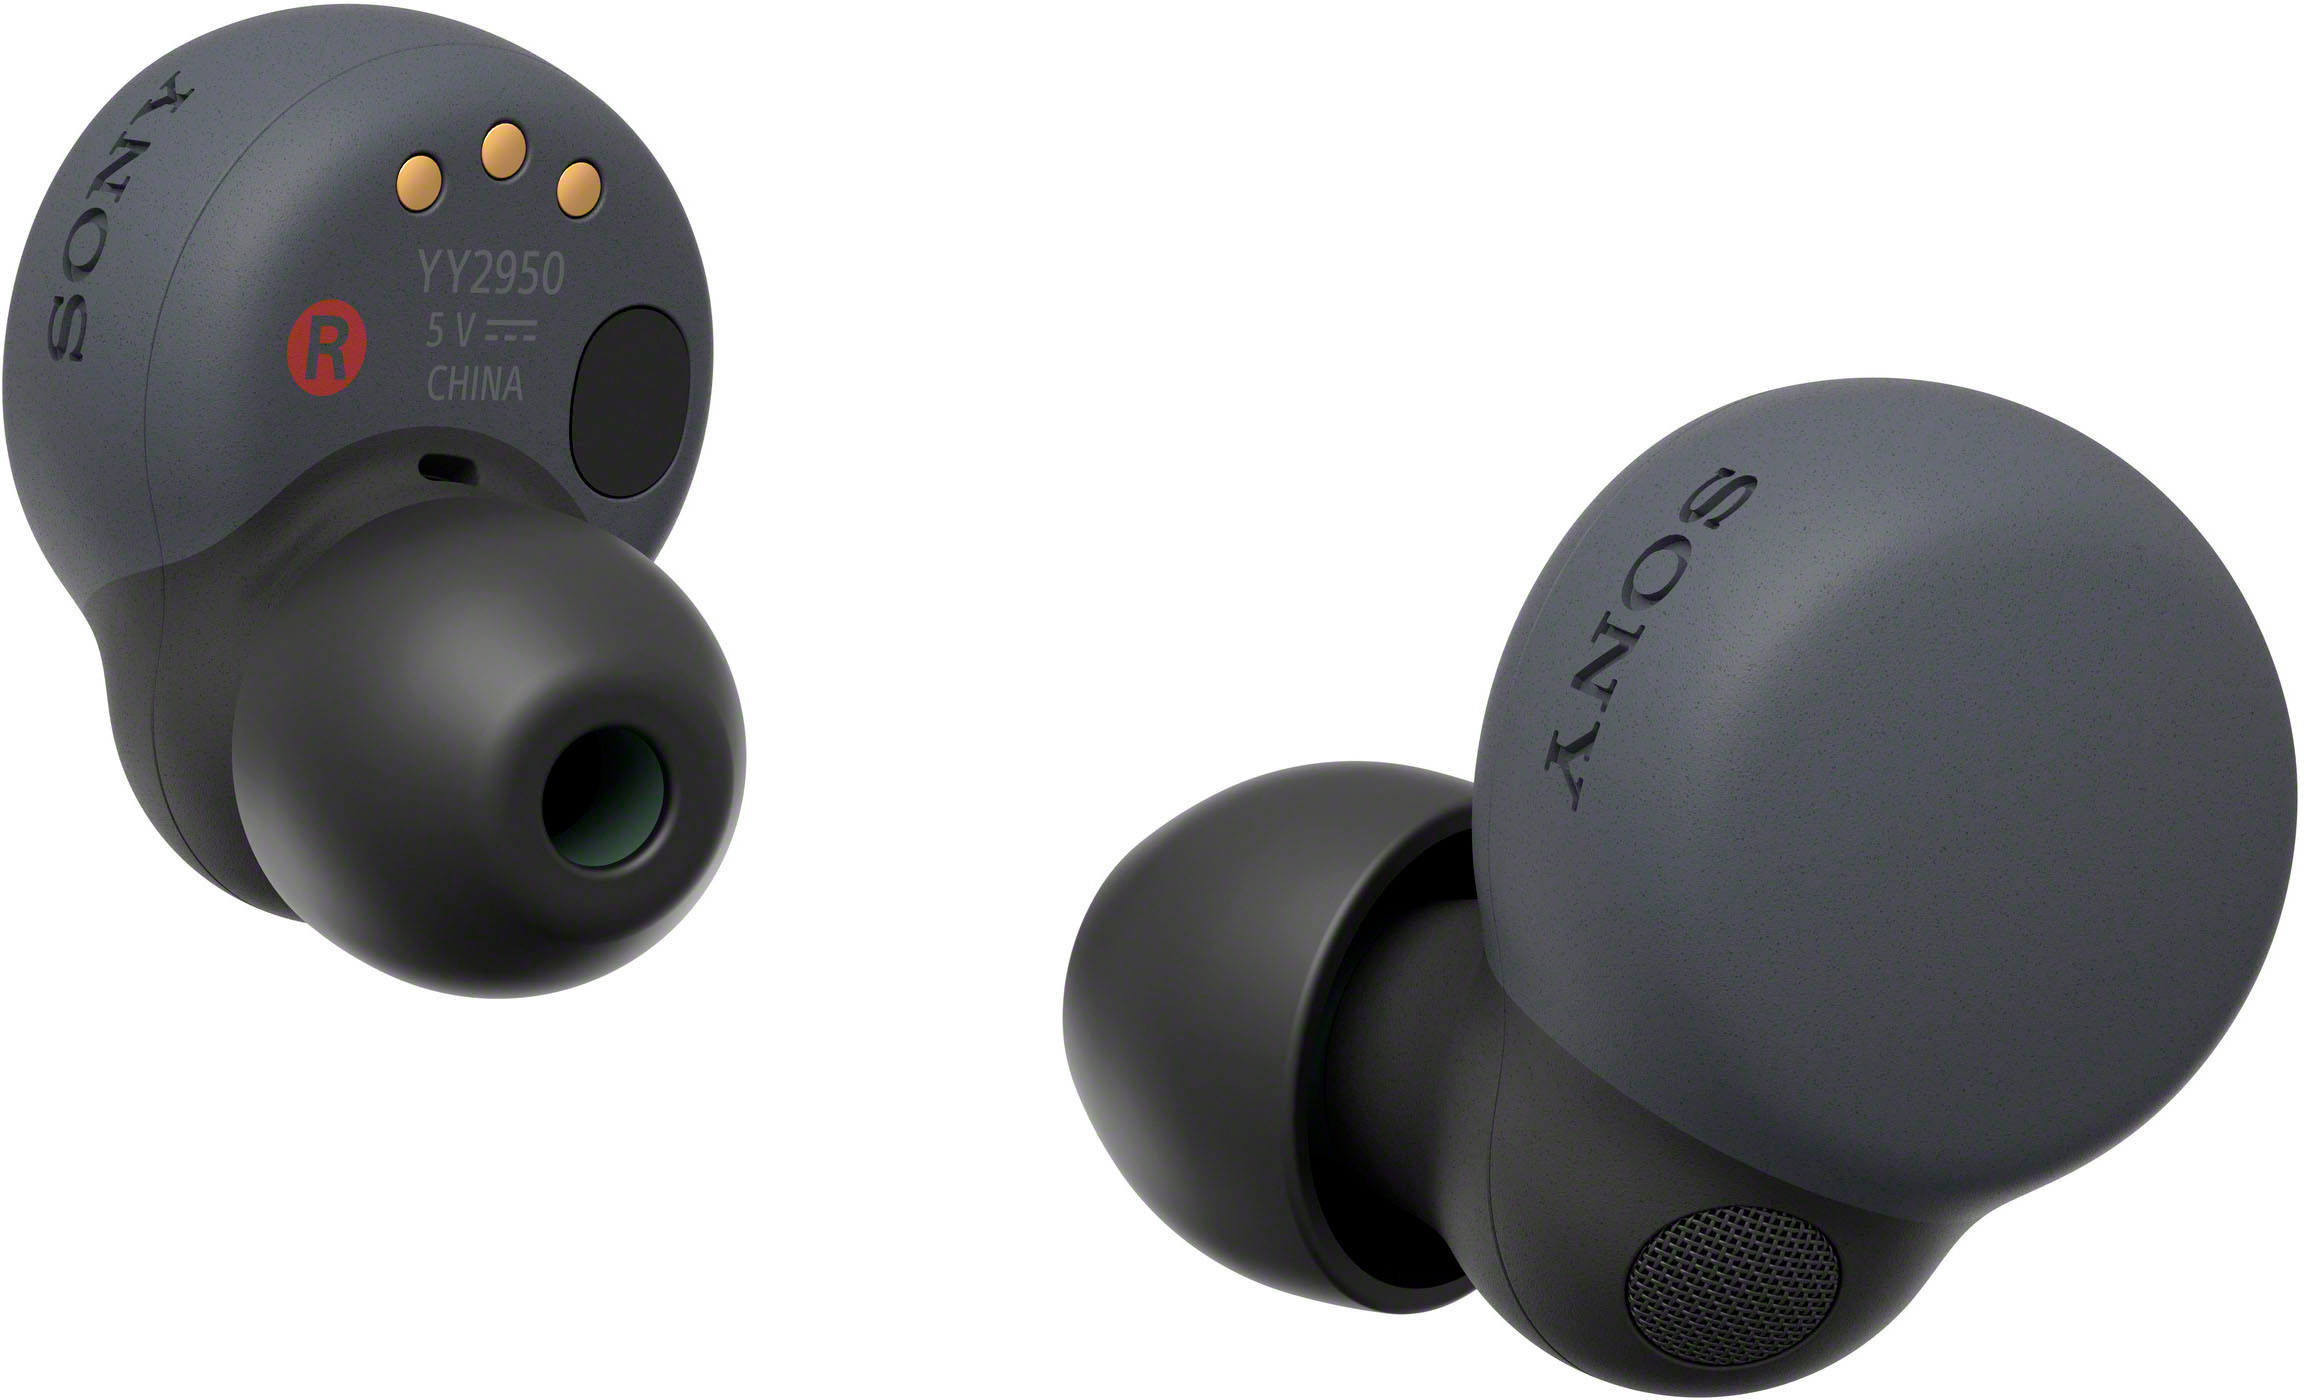 Sony LinkBuds S True Wireless Noise Canceling Earbuds Black WFLS900N/B -  Best Buy